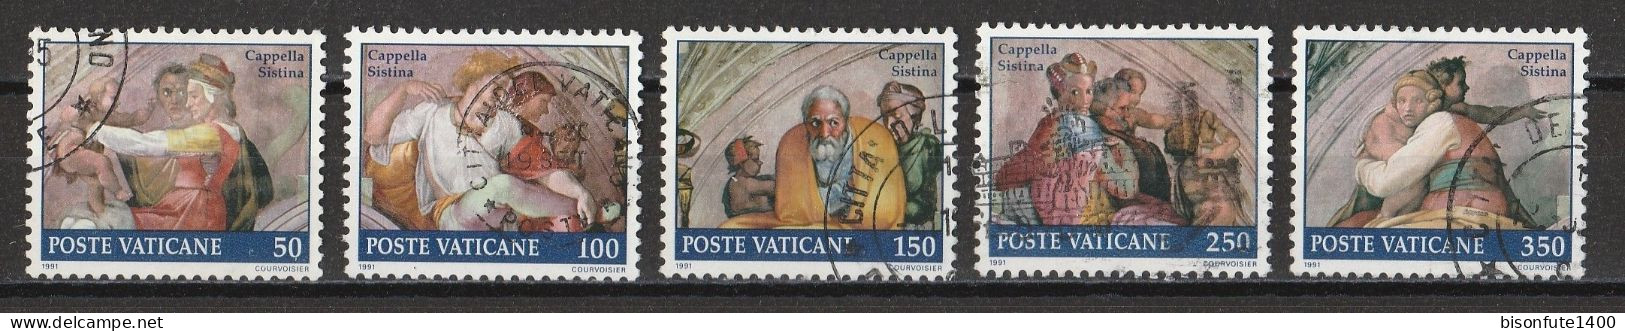 Vatican 1991 : Timbres Yvert & Tellier N° 891 - 892 - 893 - 894 - 895 - 897 - 898 - 899 - 900 Et 901 Oblitérés. - Oblitérés